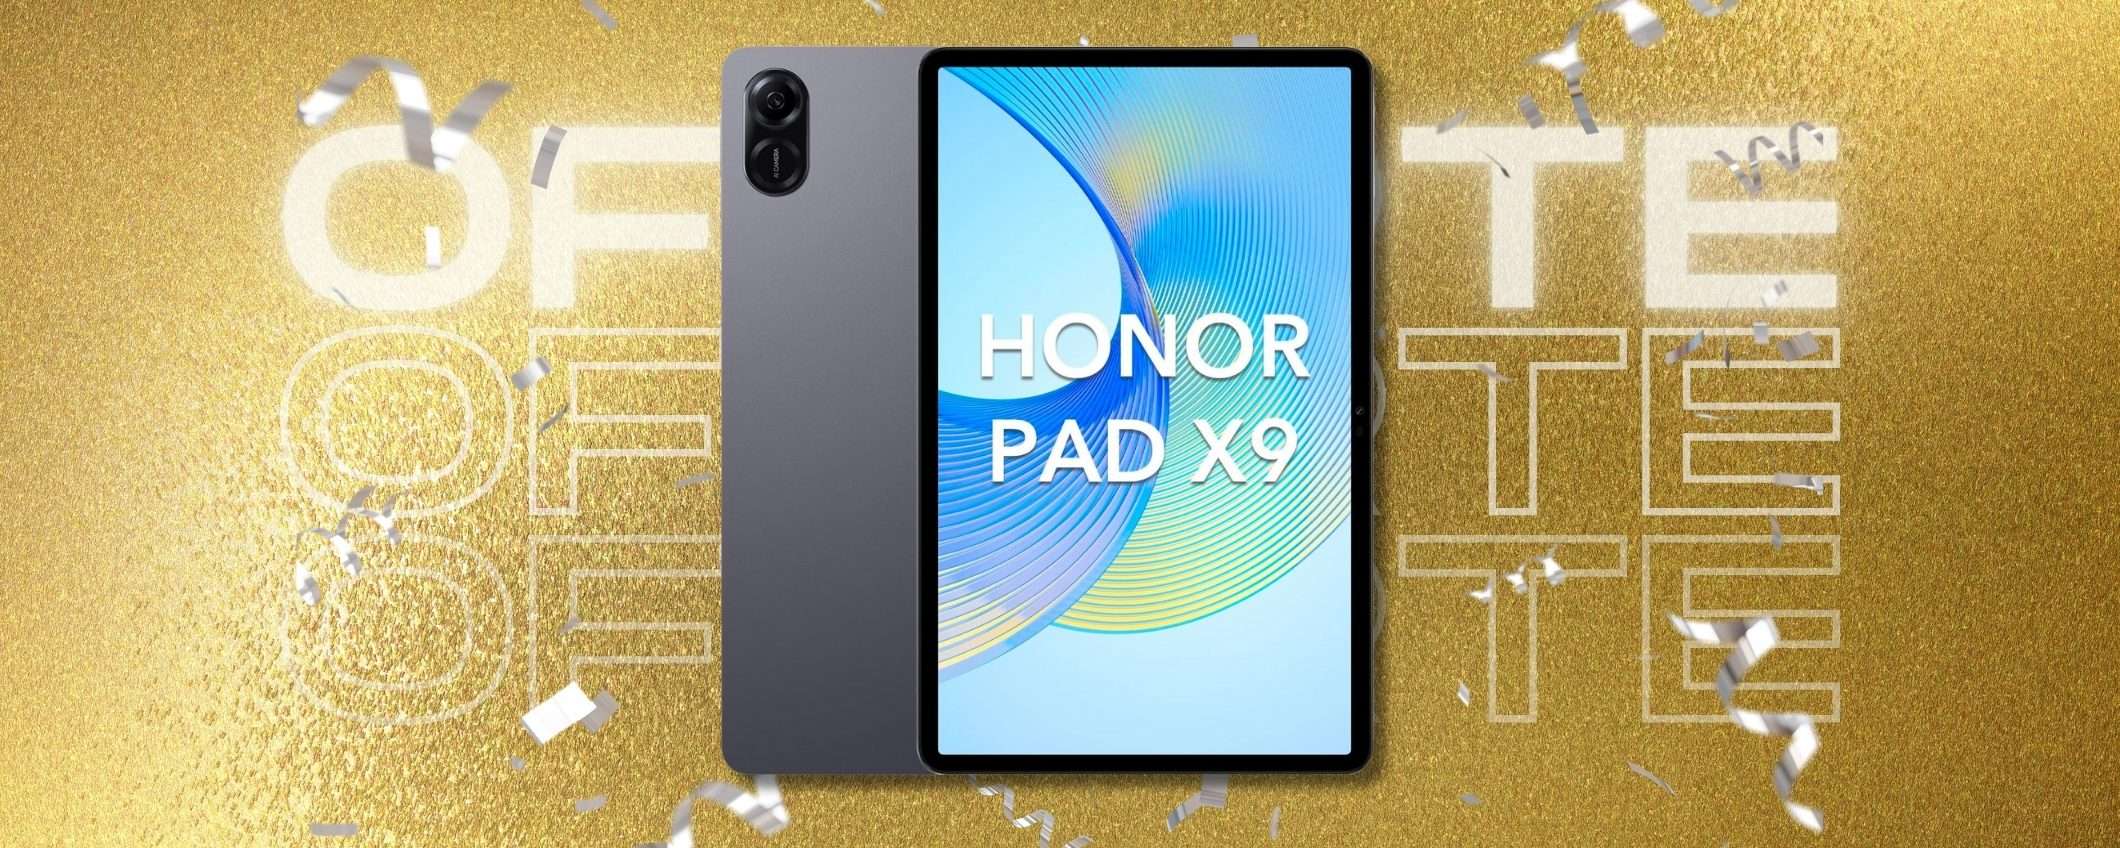 HONOR Pad X9 è il tablet sotto i 200€ da portare a casa (Offerta Prime)